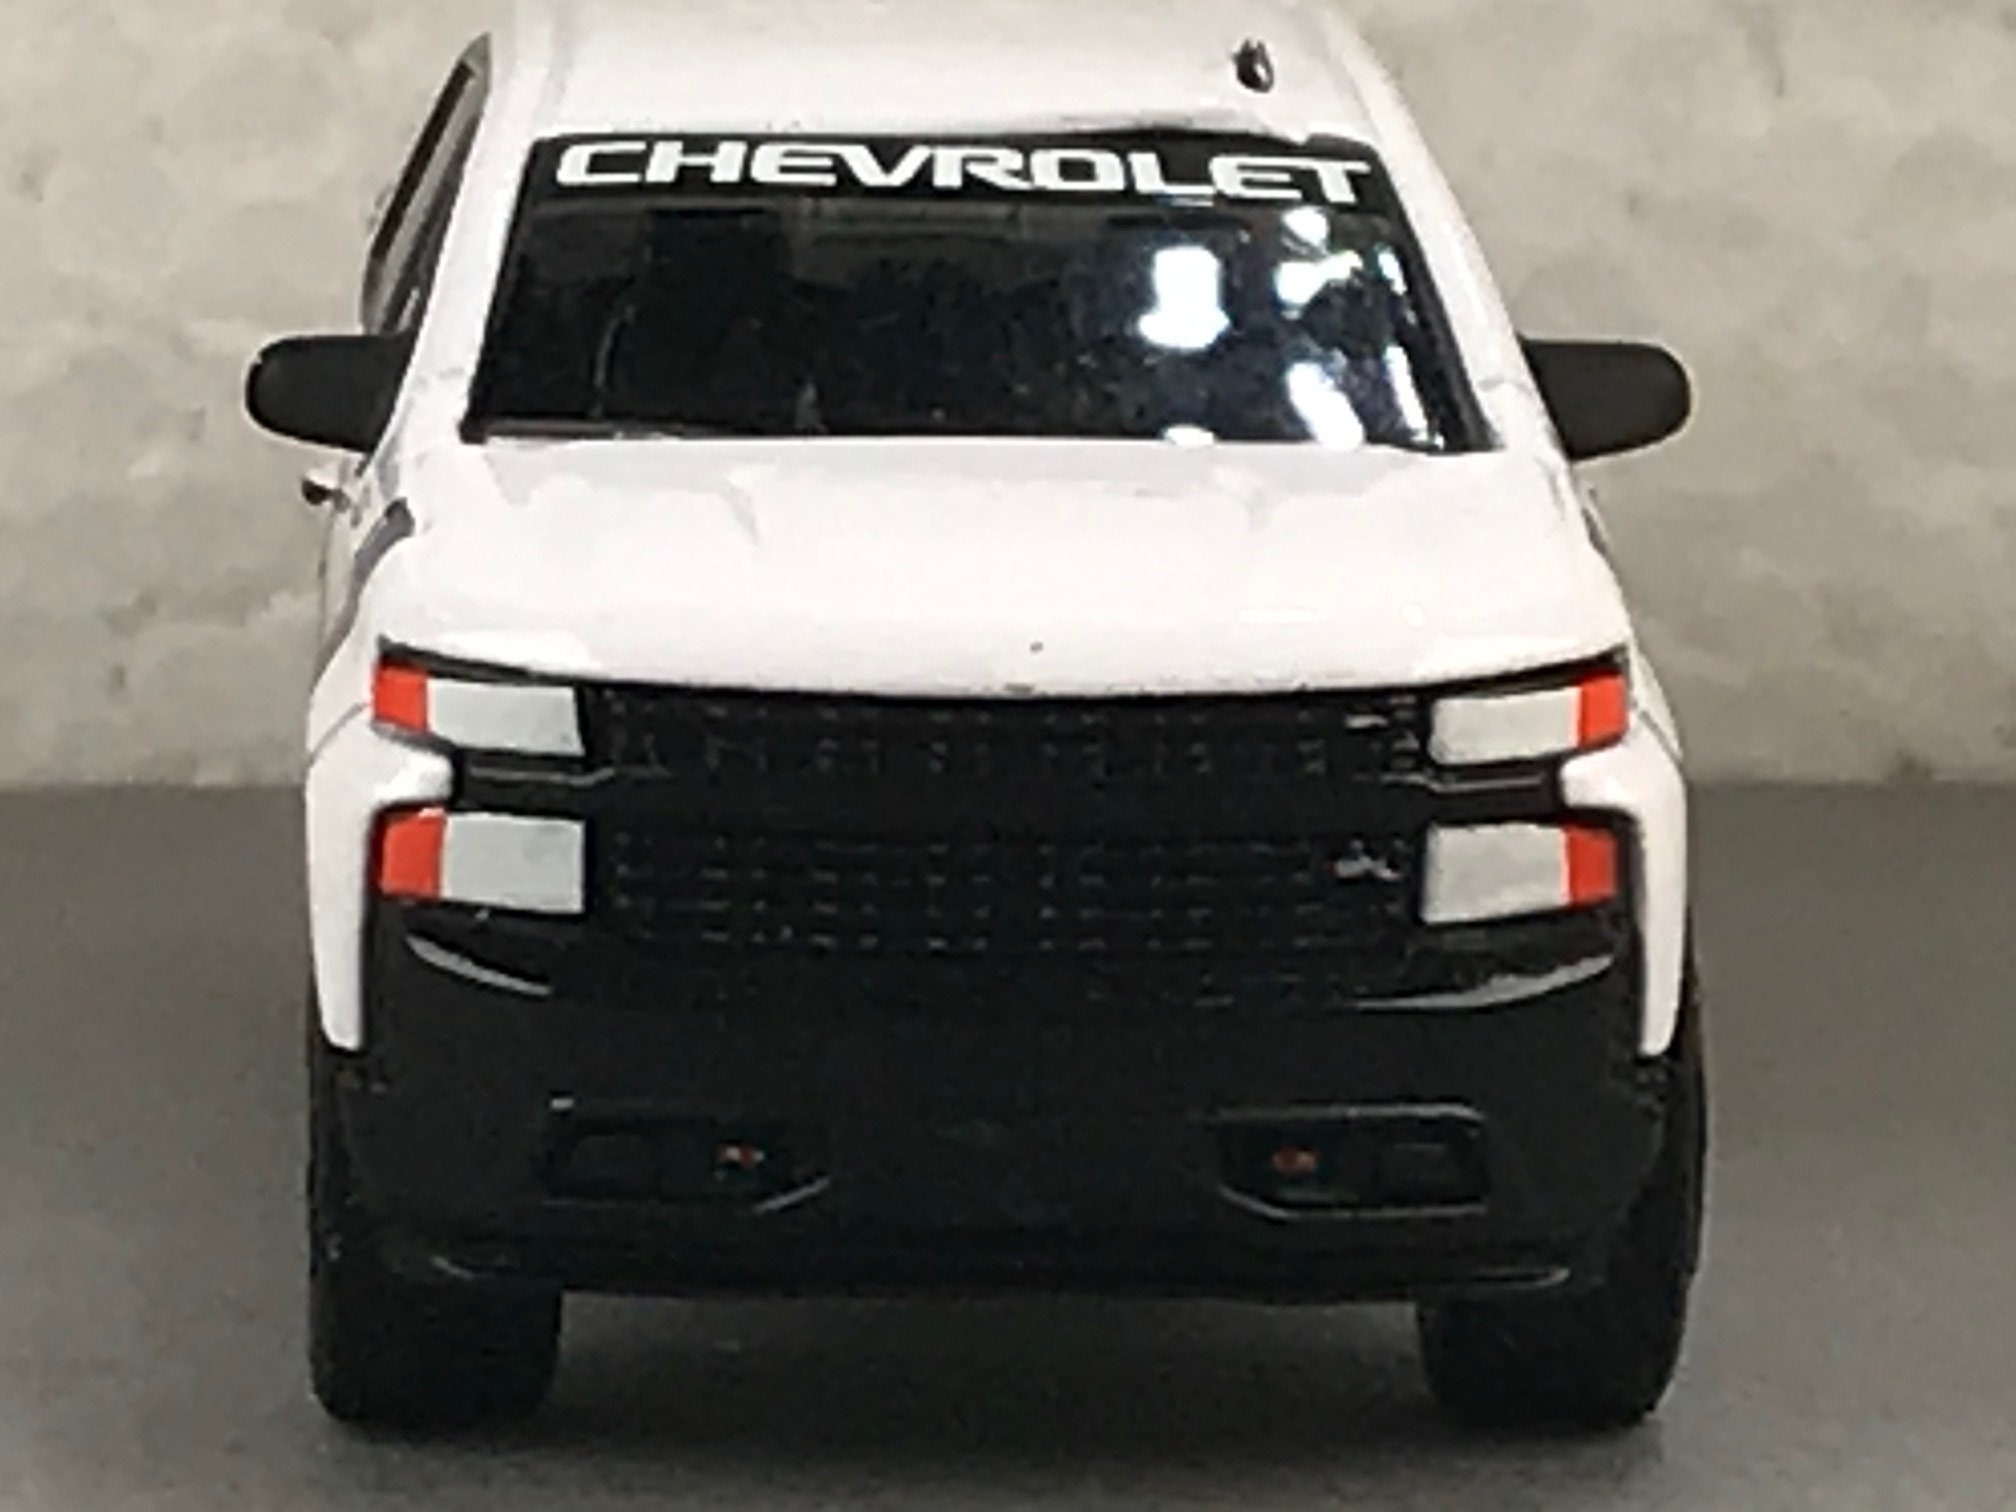 1-64 Scale / S-scale 2019 Chevrolet Silverado Indy 500 - Etsy